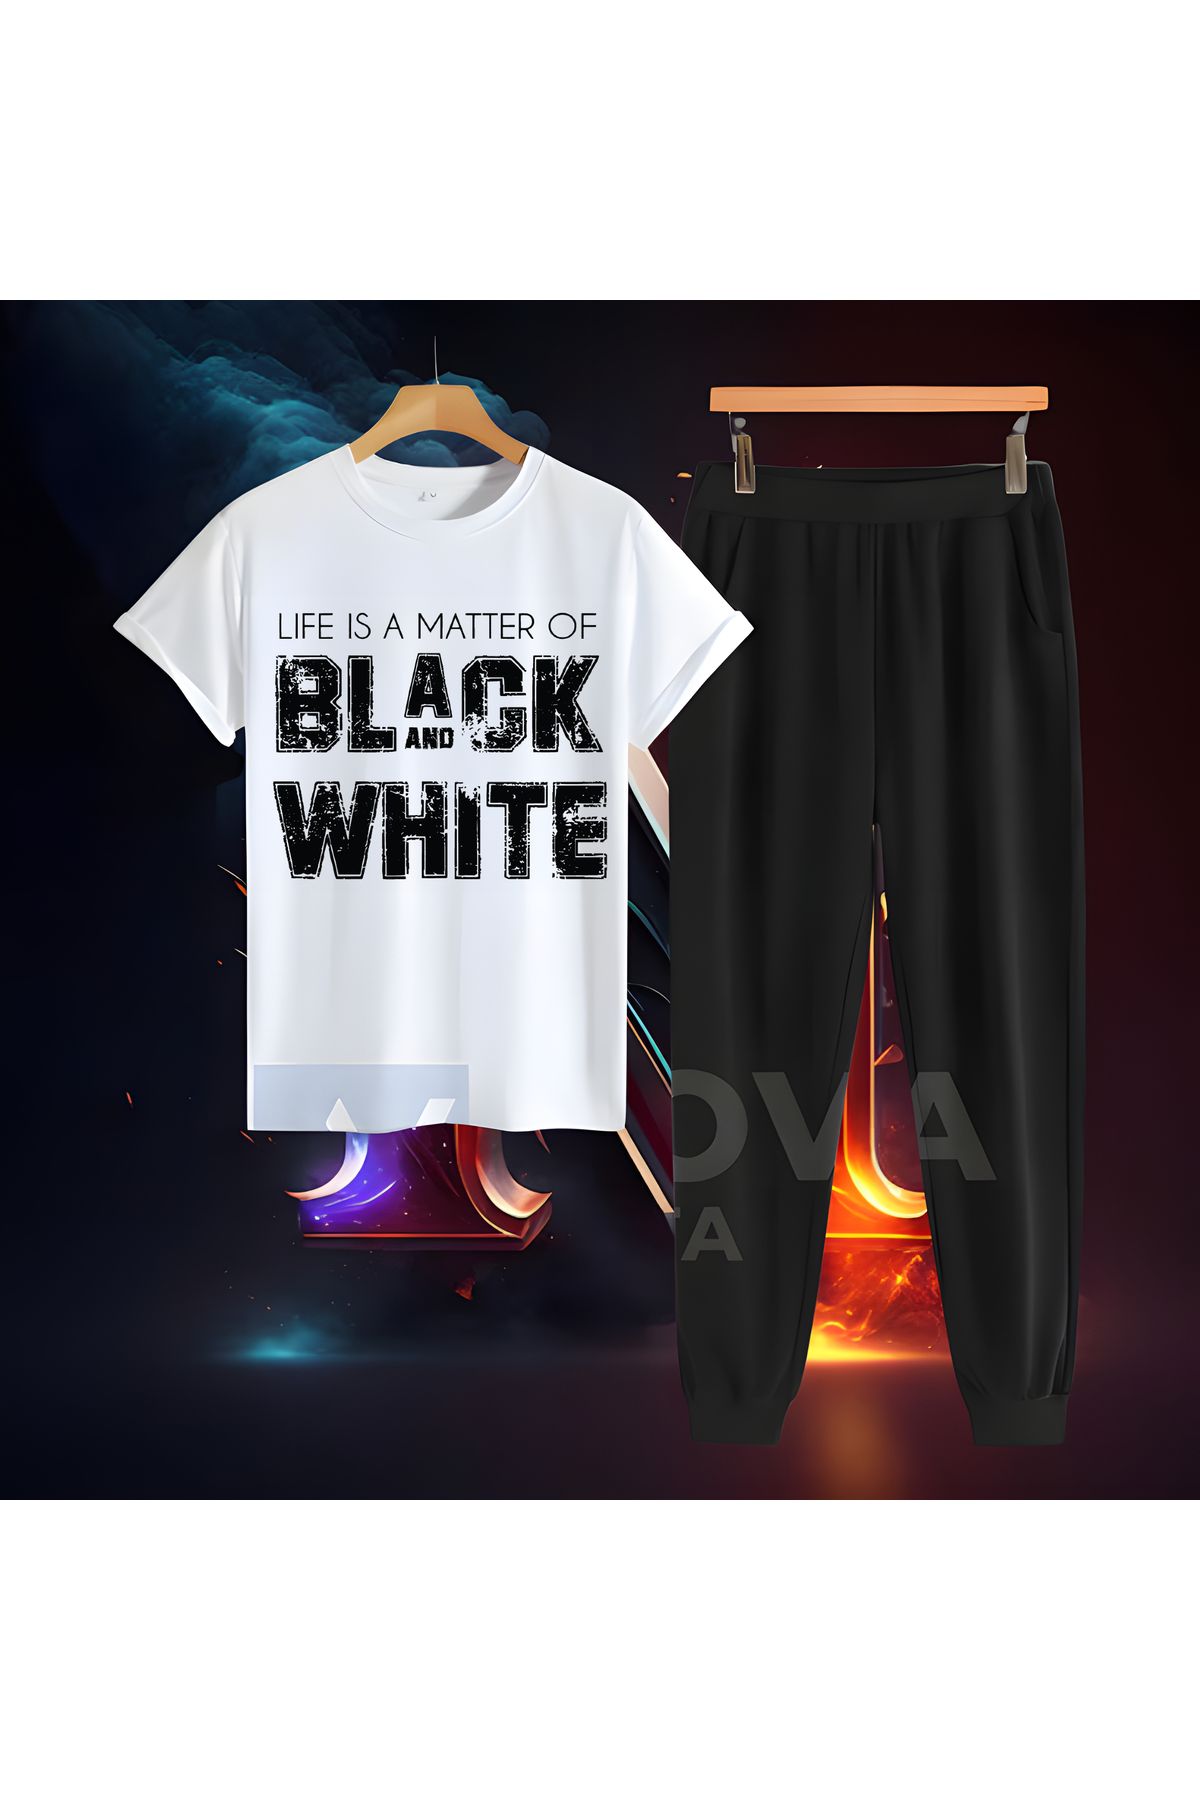 Biy Store beşiktaş semt baskılı black and white baskılı unisex tişört t-shirt eşofman takımı